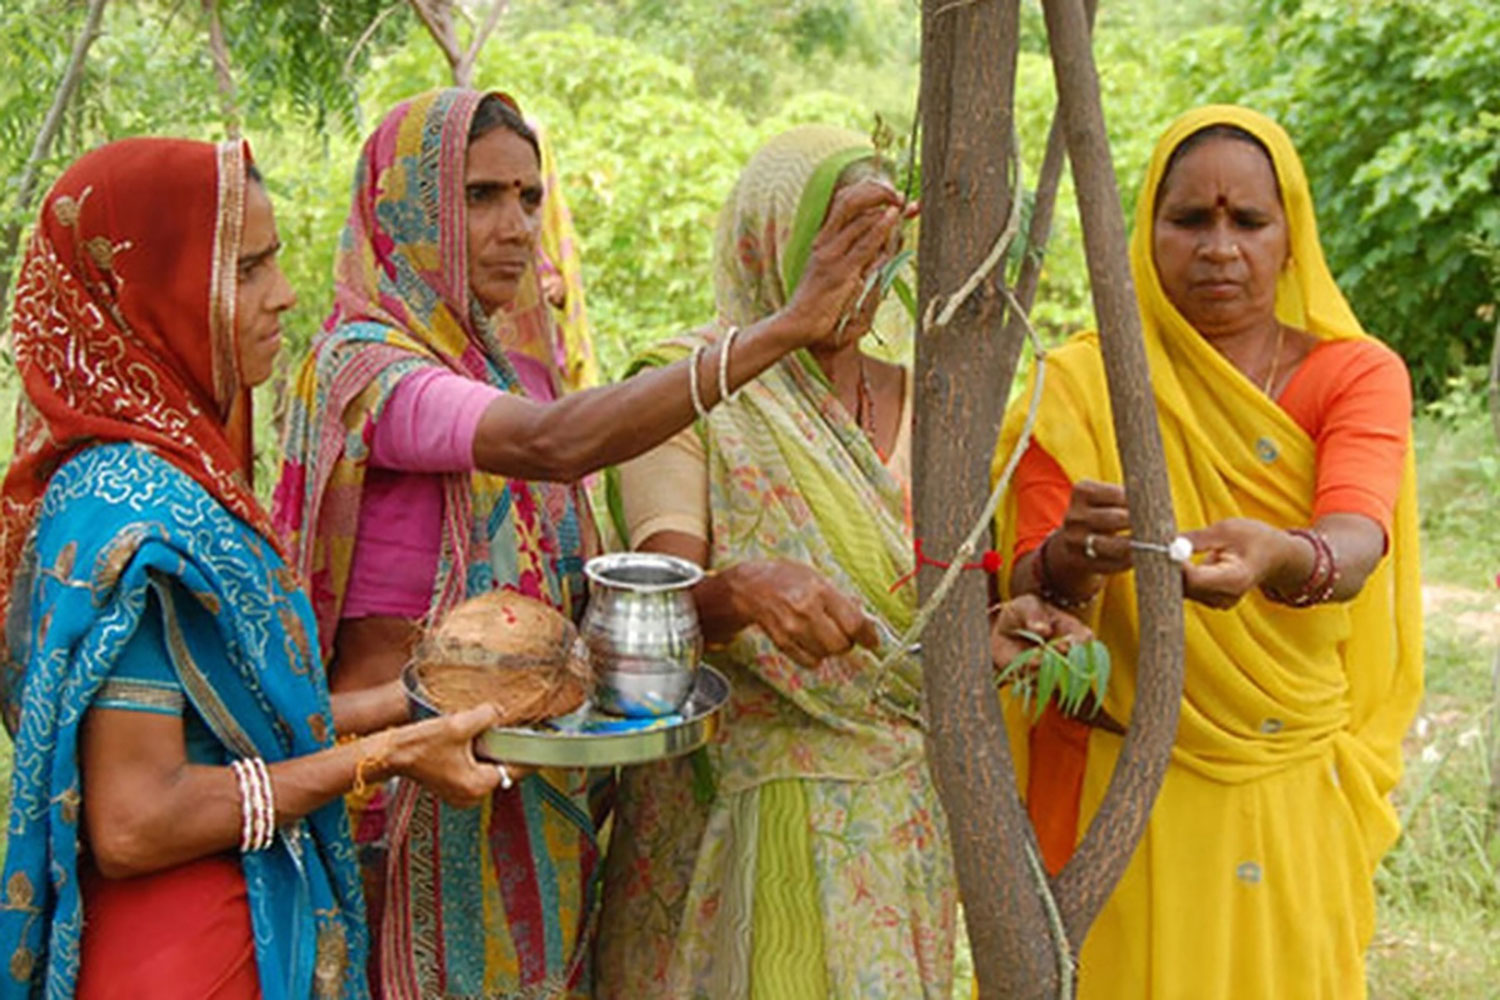 Empat orang perempuan India dewasa mengelilingi sebuah pohon, salah satunya membawa nampan berisi bejana logam dan sabut kelapa, perempuan di sebelahnya menggoreskan cairan pewarna ke pohon.